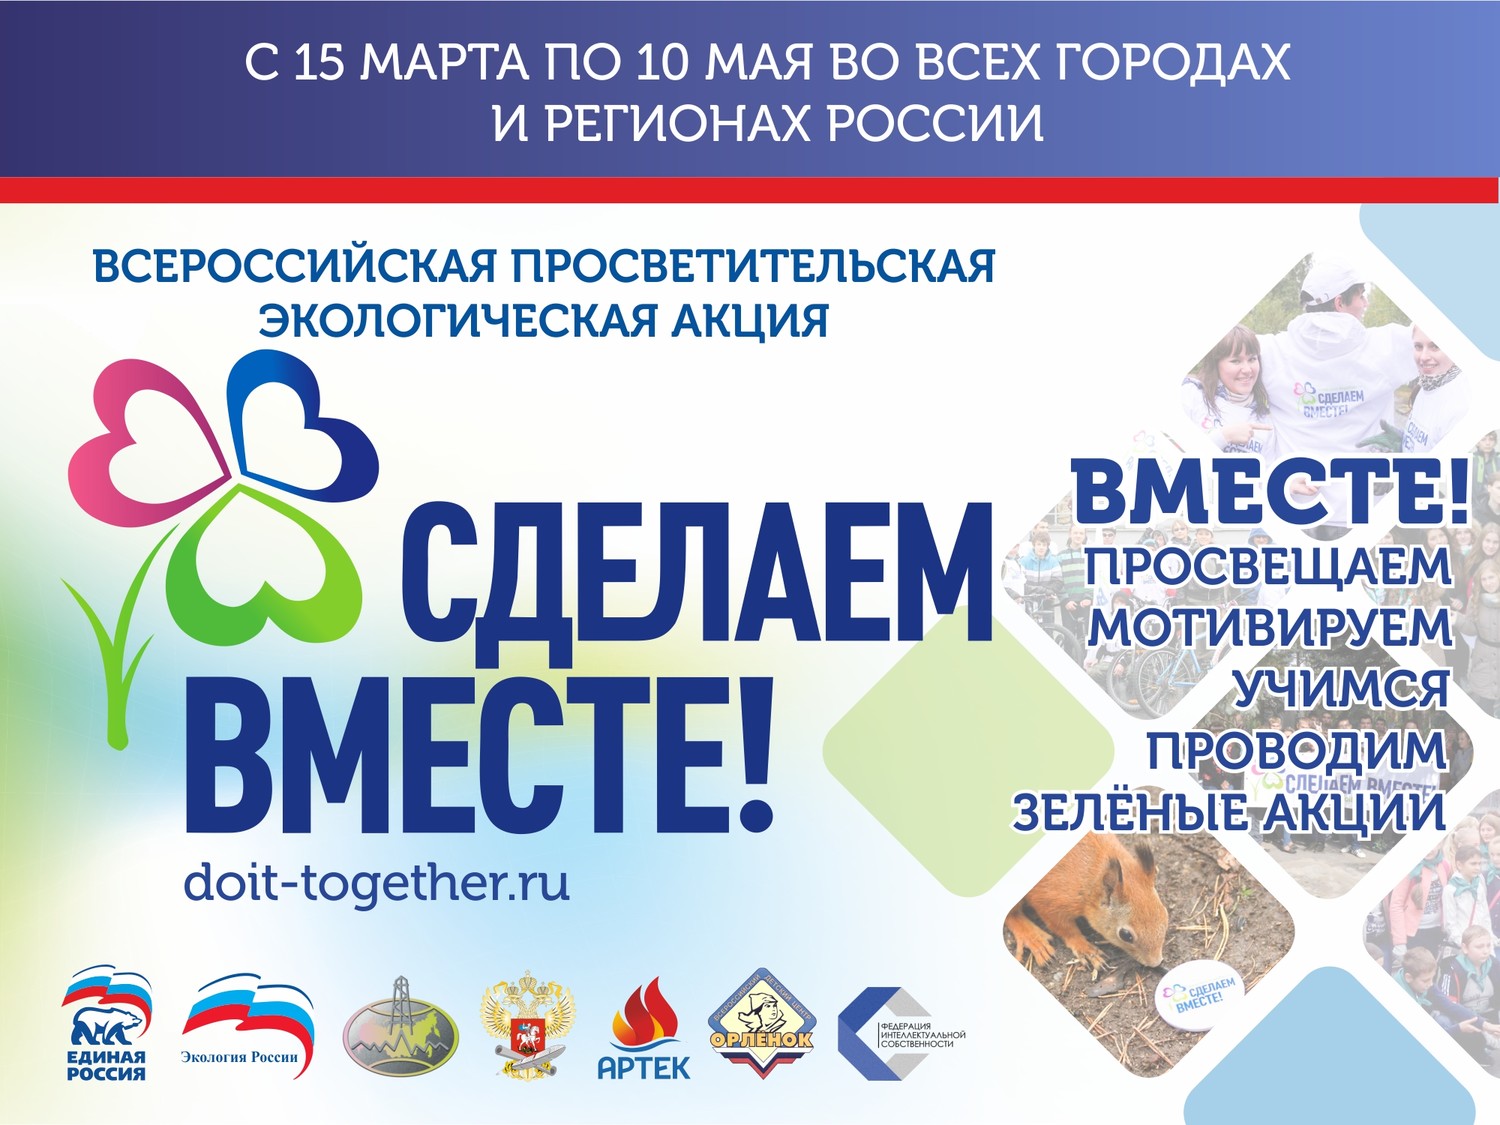 Картинка к материалу: «Общероссийская образовательная Акция «Сделаем вместе!»»